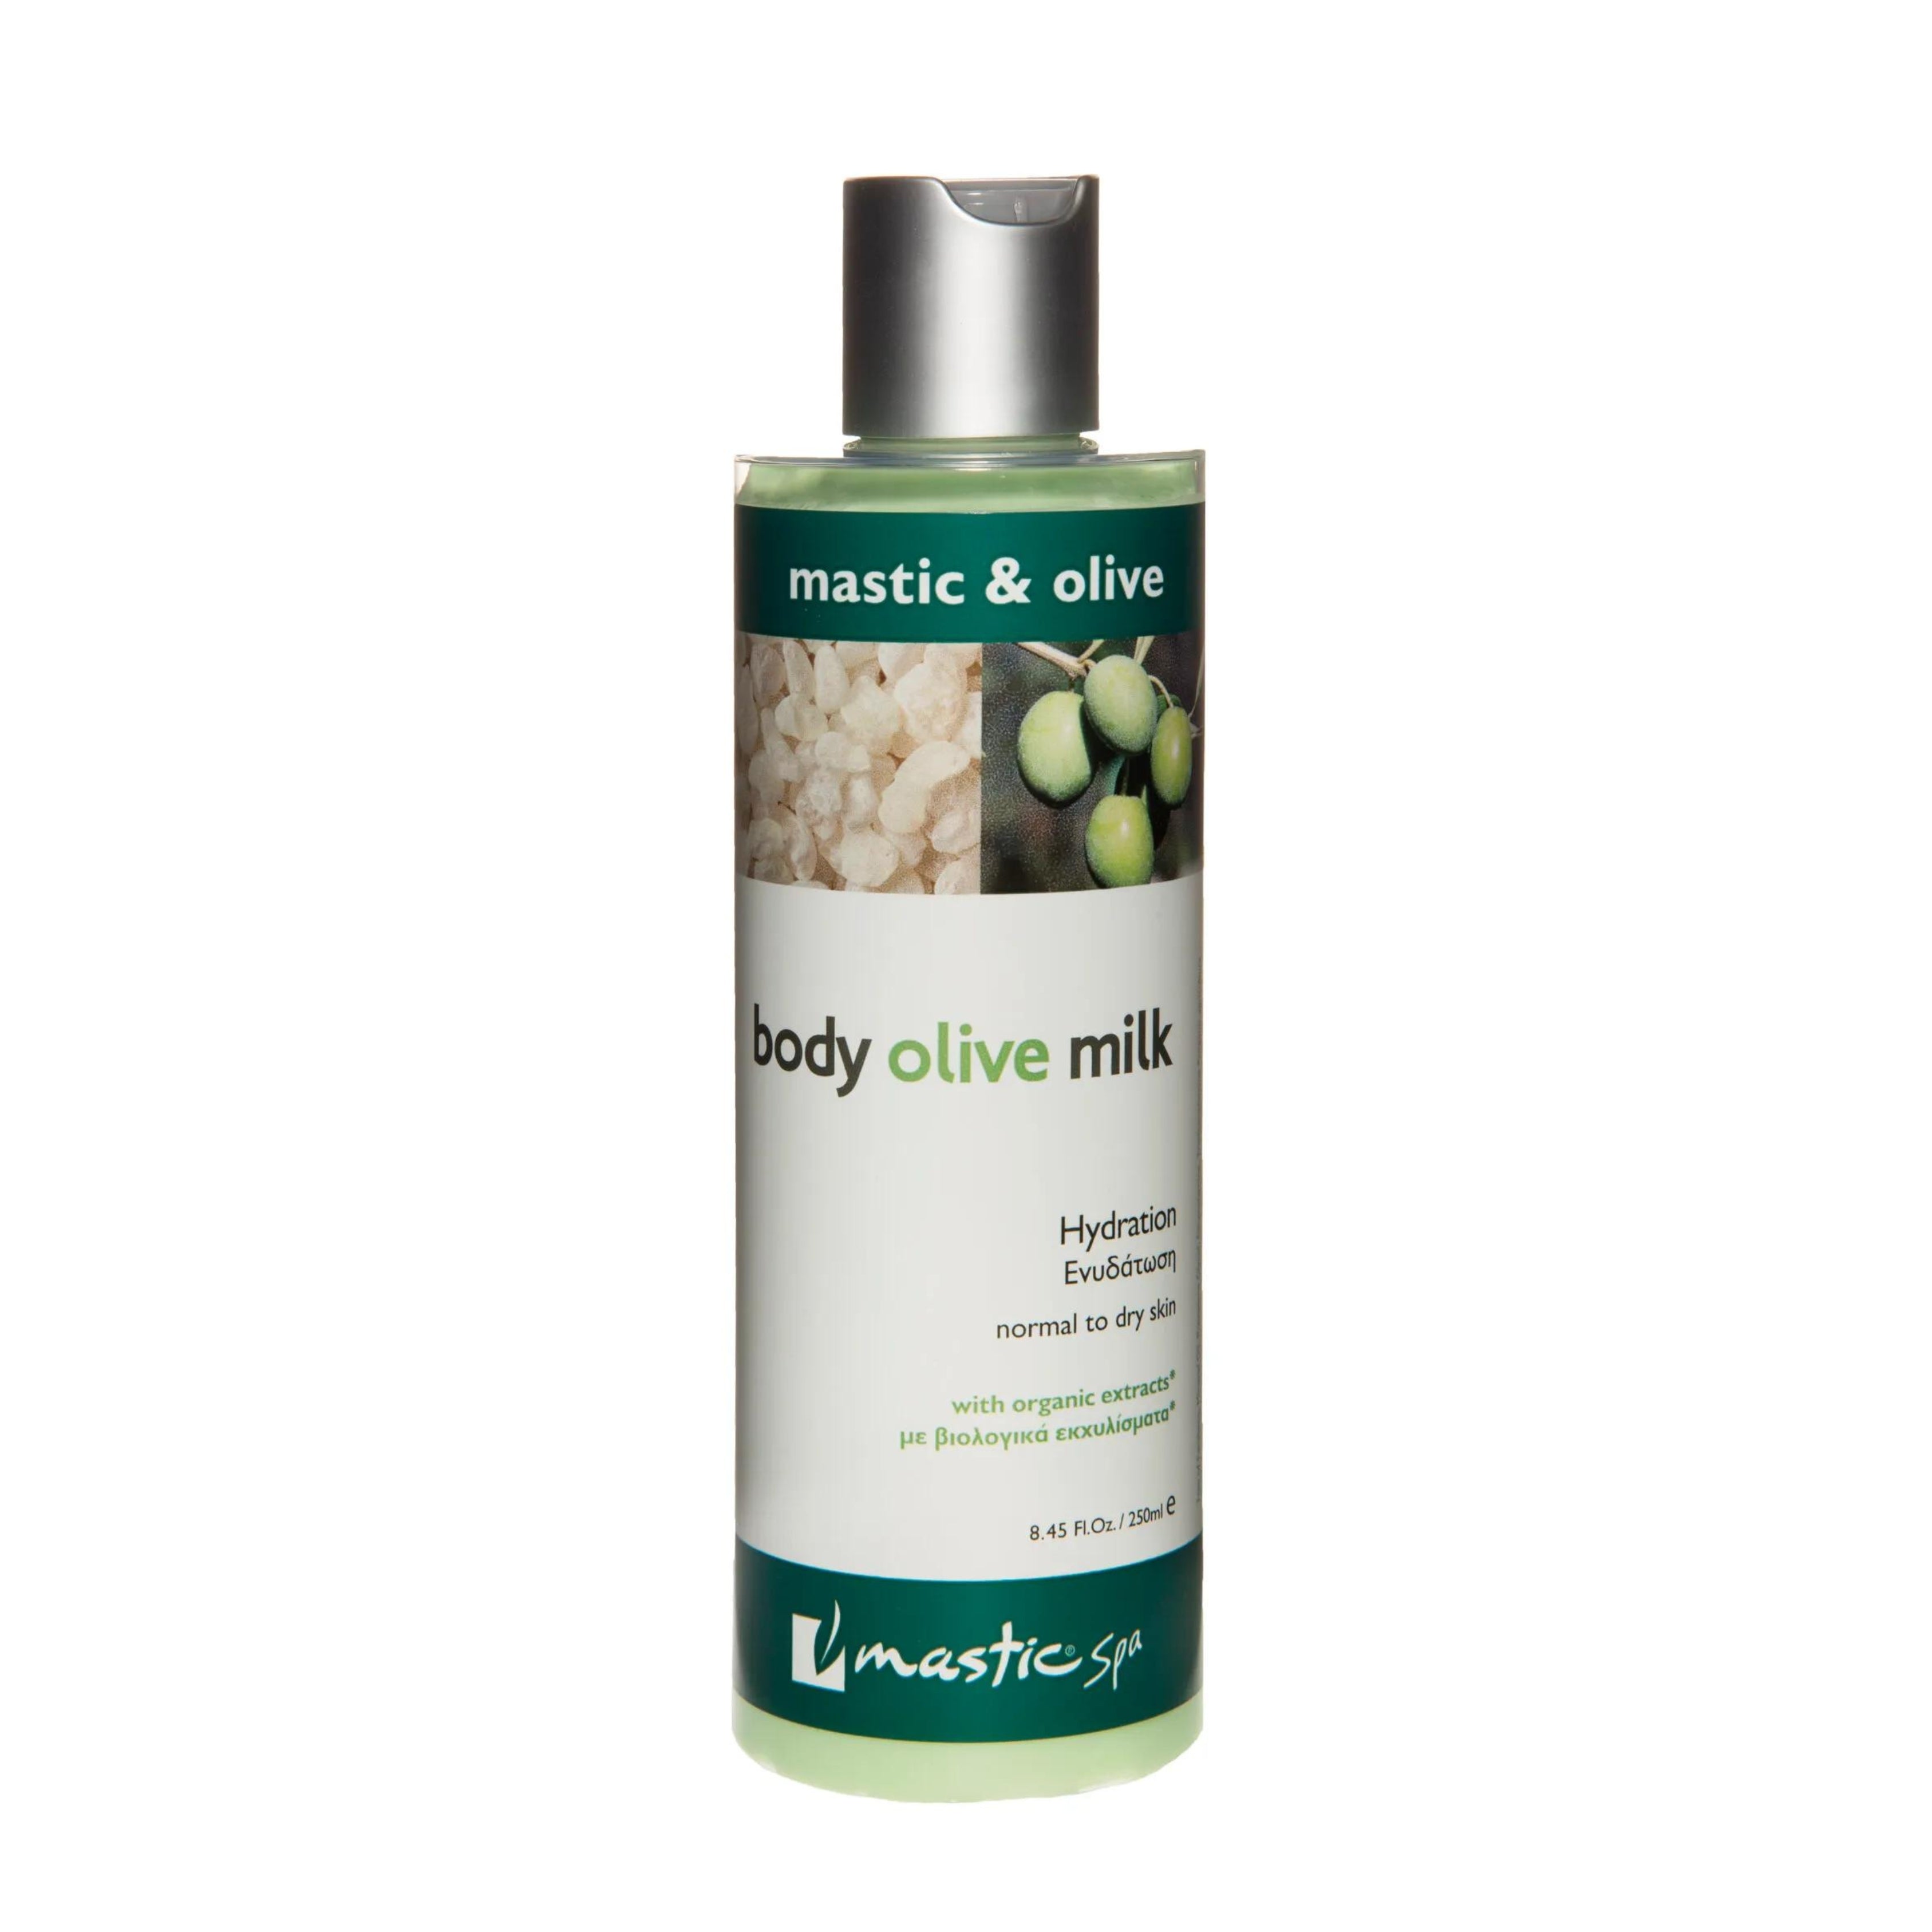  Après-shampooing au mastic et à l’huile d’olive – 250ml